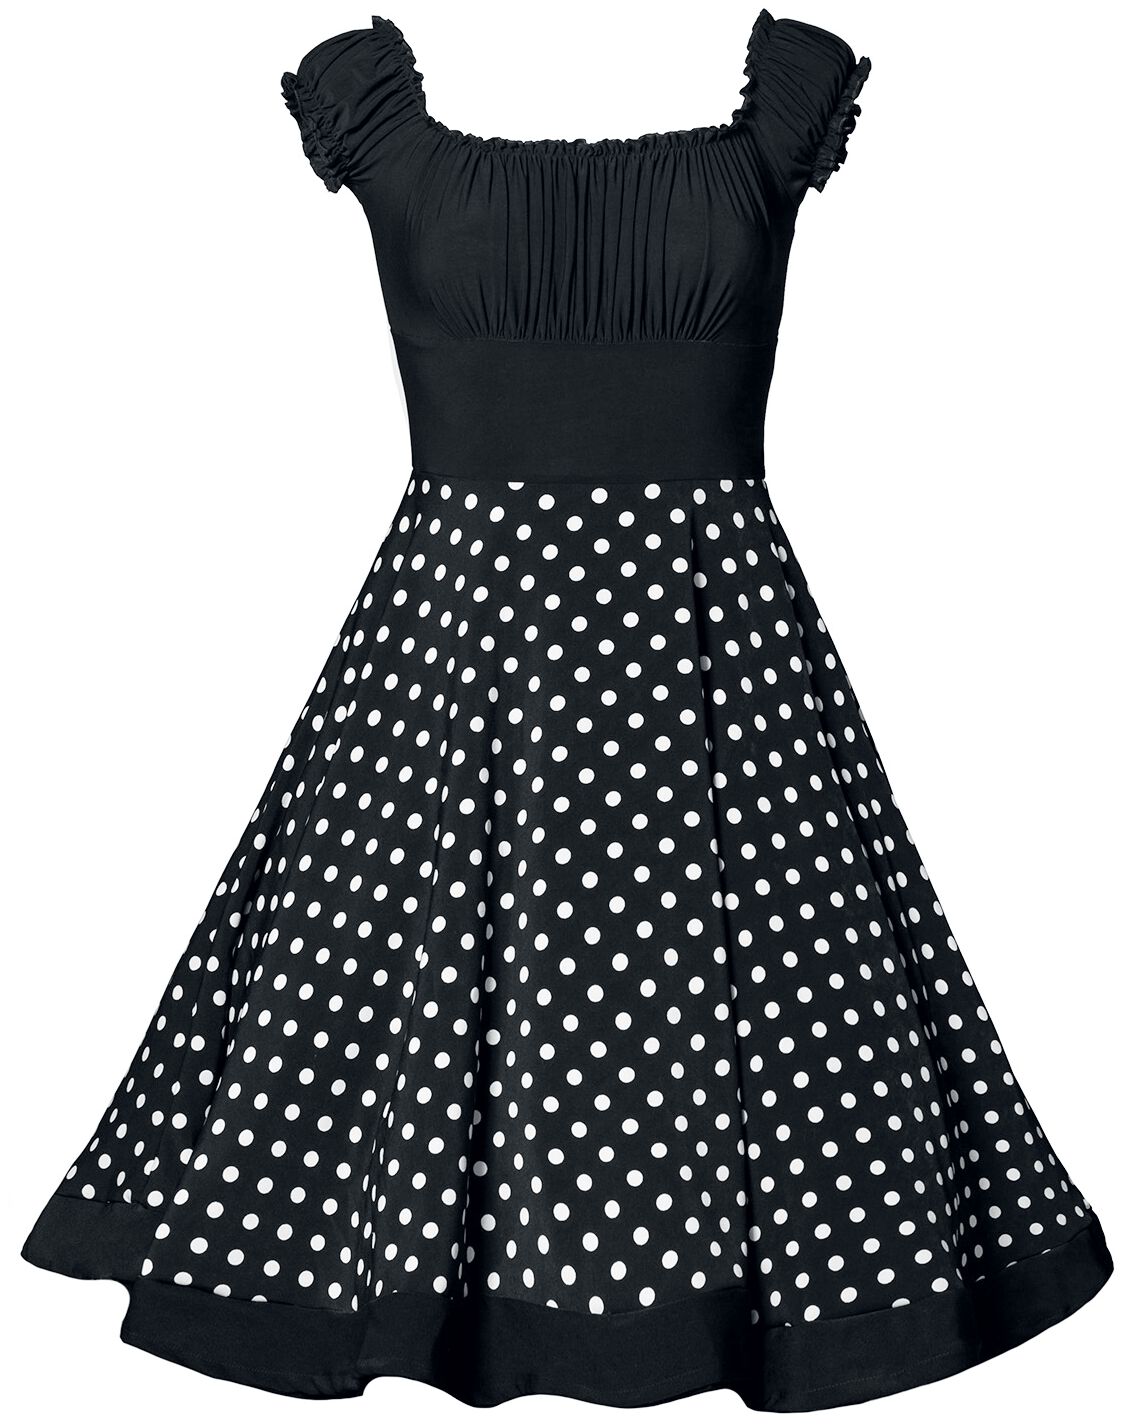 Belsira - Rockabilly Kleid knielang - Schulterfreies Swing-Kleid - XS bis 3XL - für Damen - Größe S - schwarz/weiß